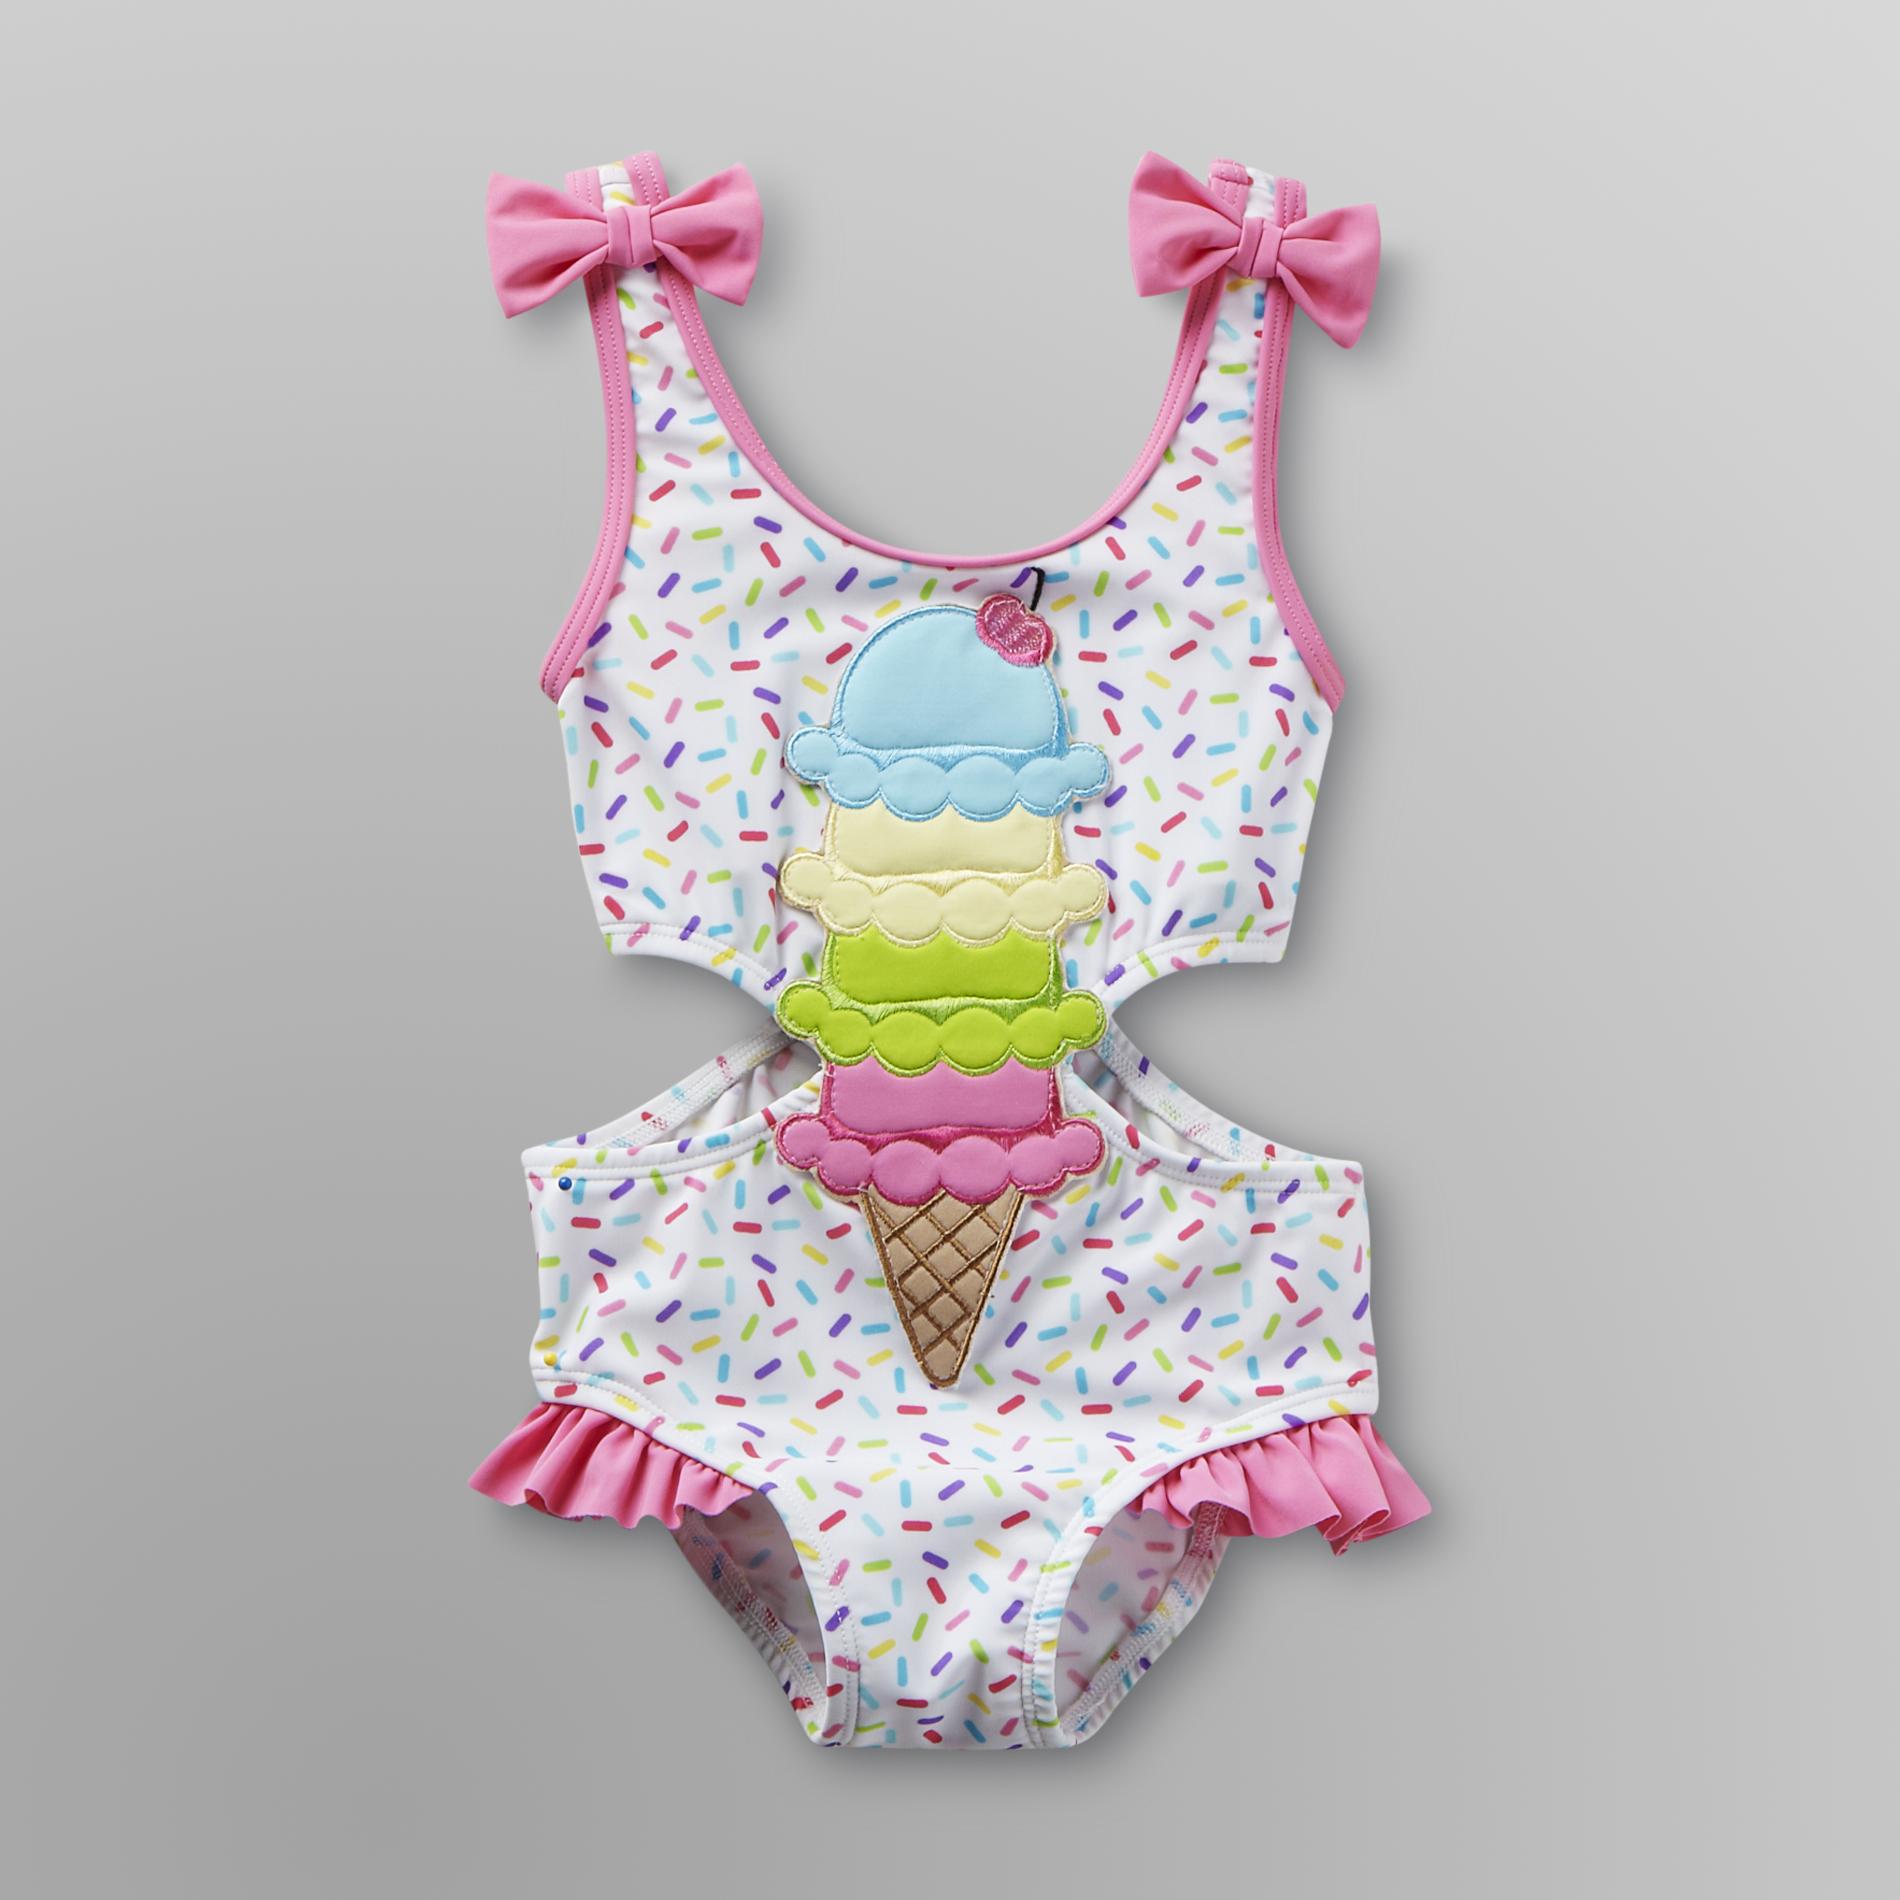 Joe Boxer Infant & Toddler Girl's Swimsuit - Ice Cream